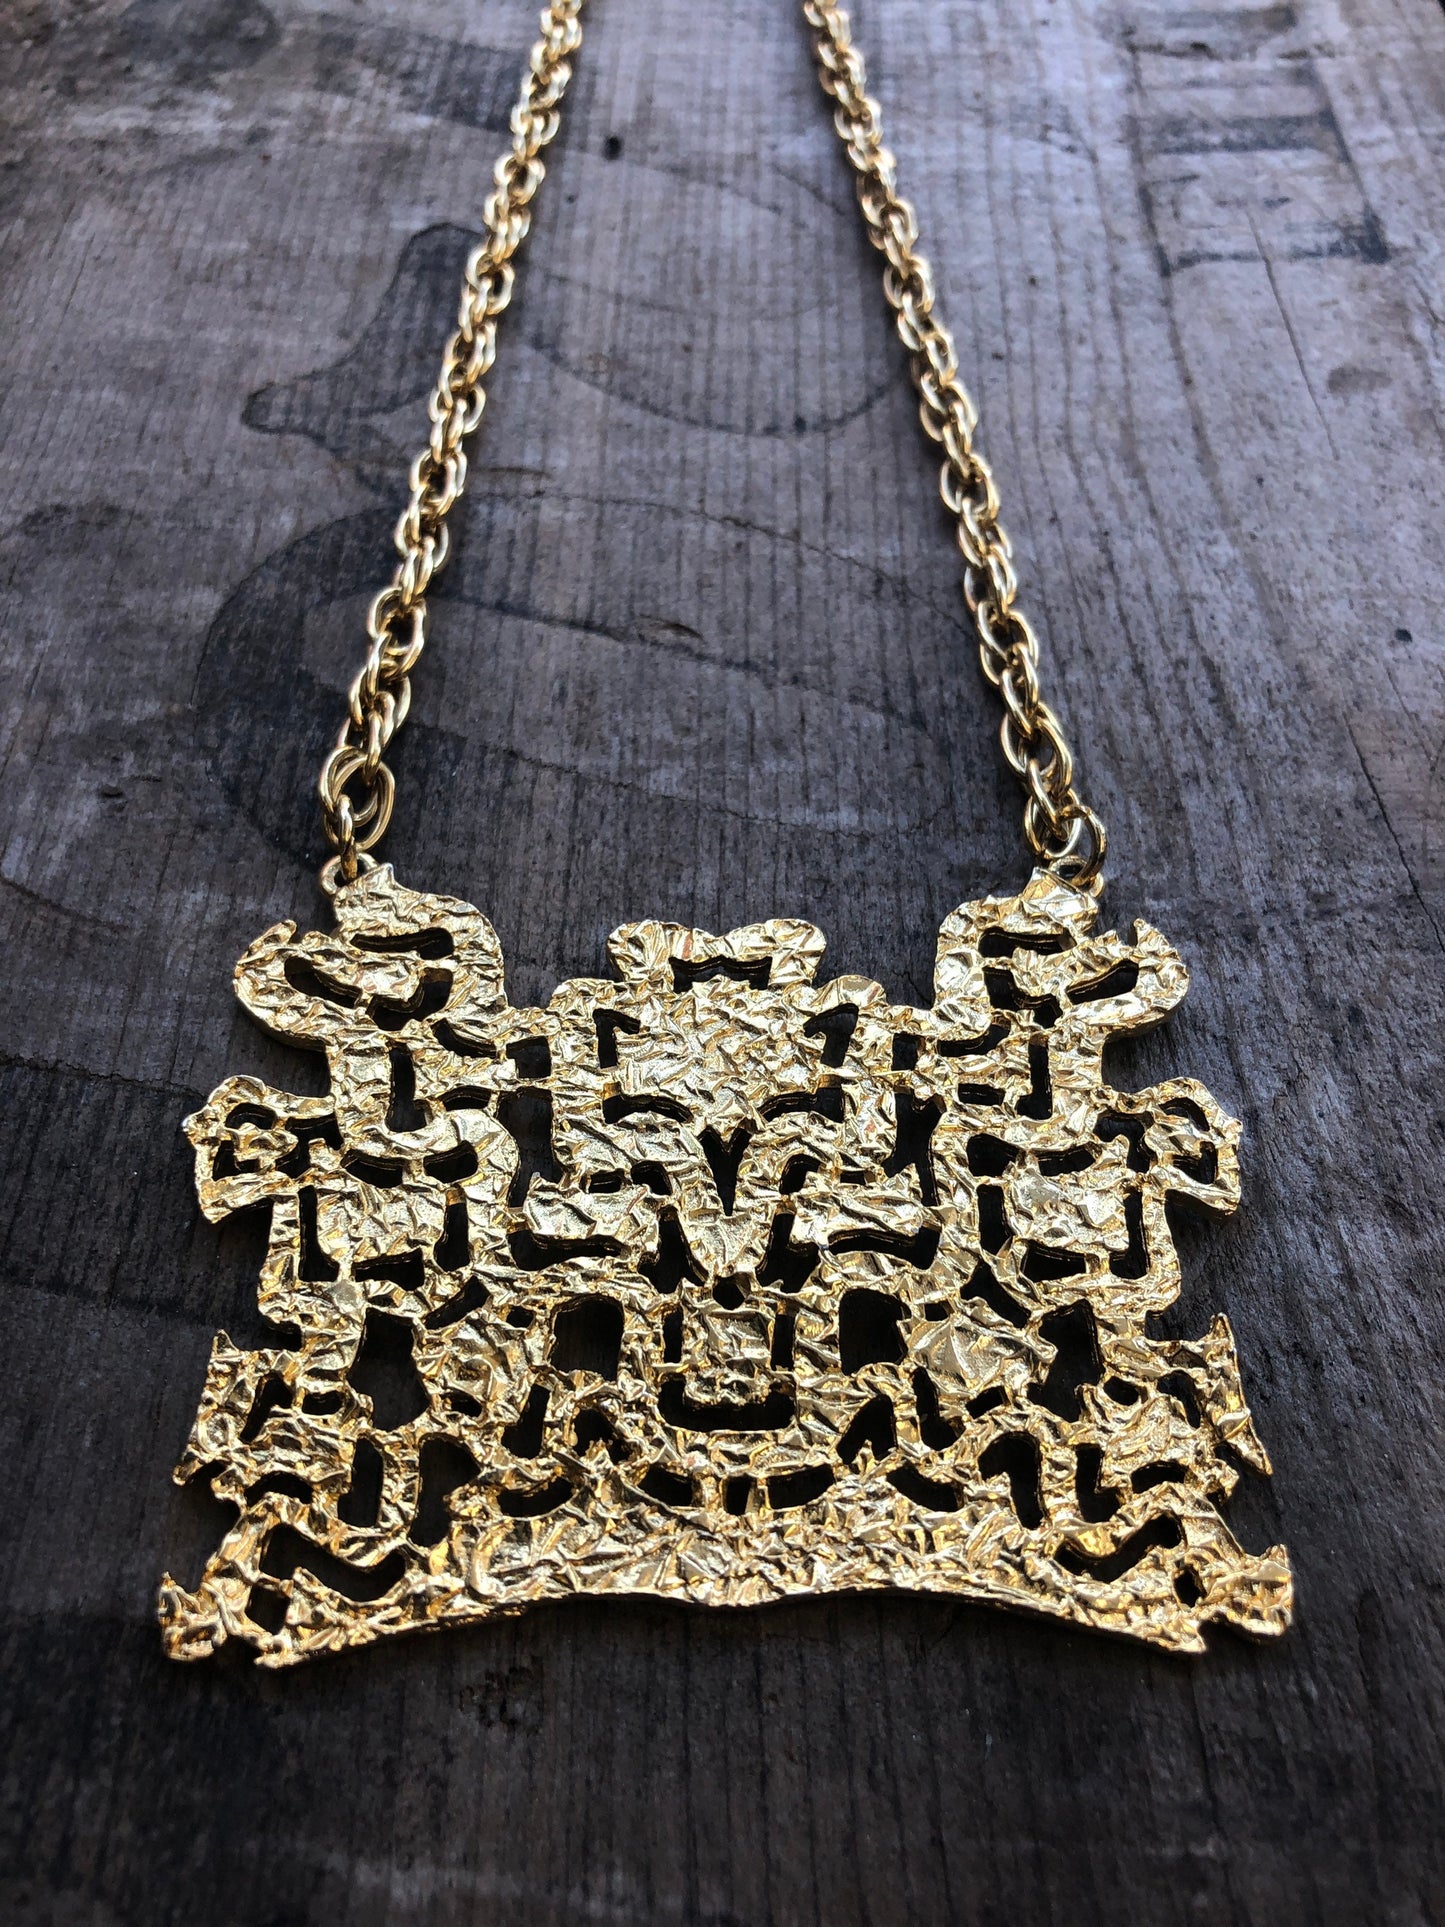 Unique Vintage Cut Shiny Gold Large Pendant Necklace